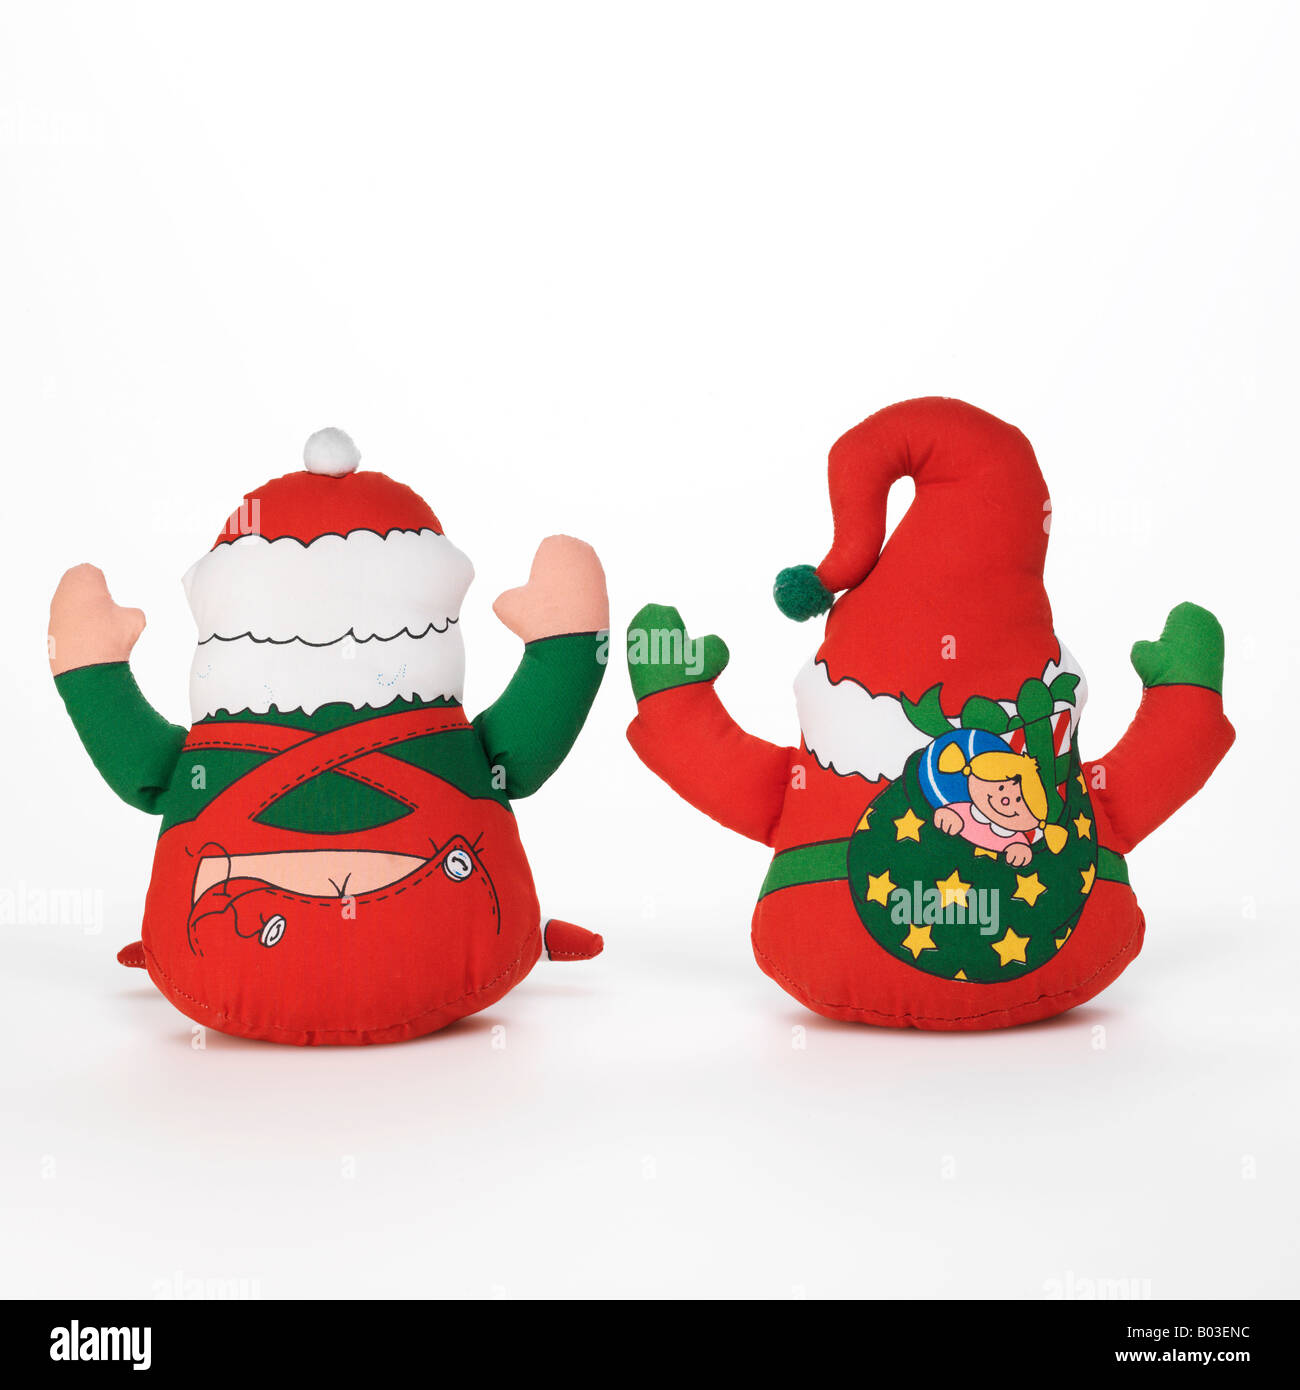 Santa Claus Christmas elf toys on white background Stock Photo - Alamy